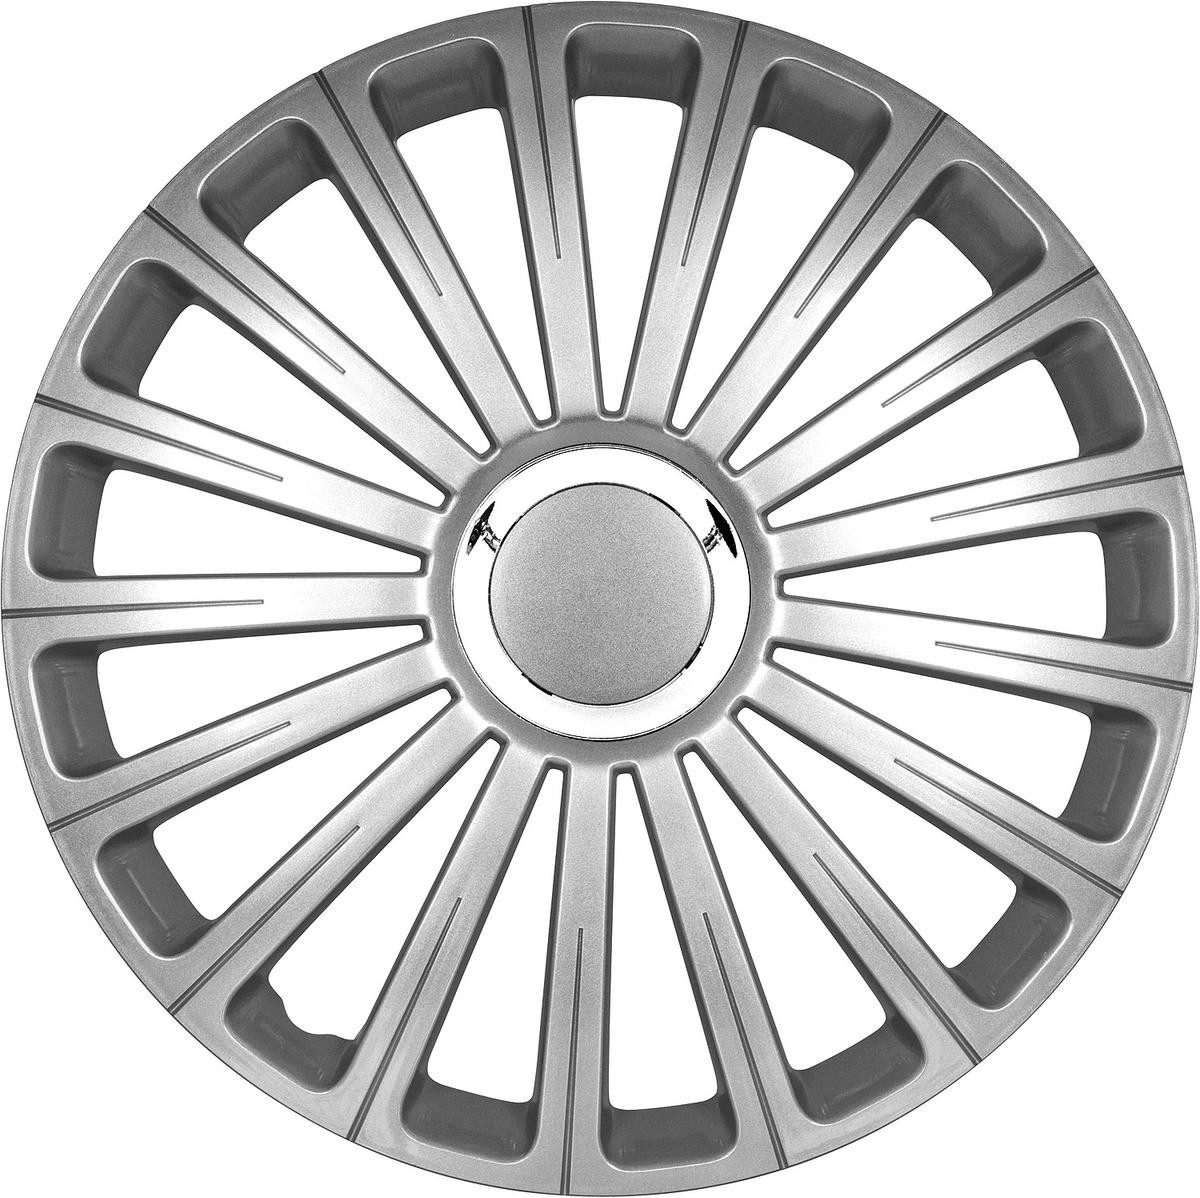 ARGO 13RADICALPRO Car wheel trims VW Golf 4 (1J1) 13 Inch silver